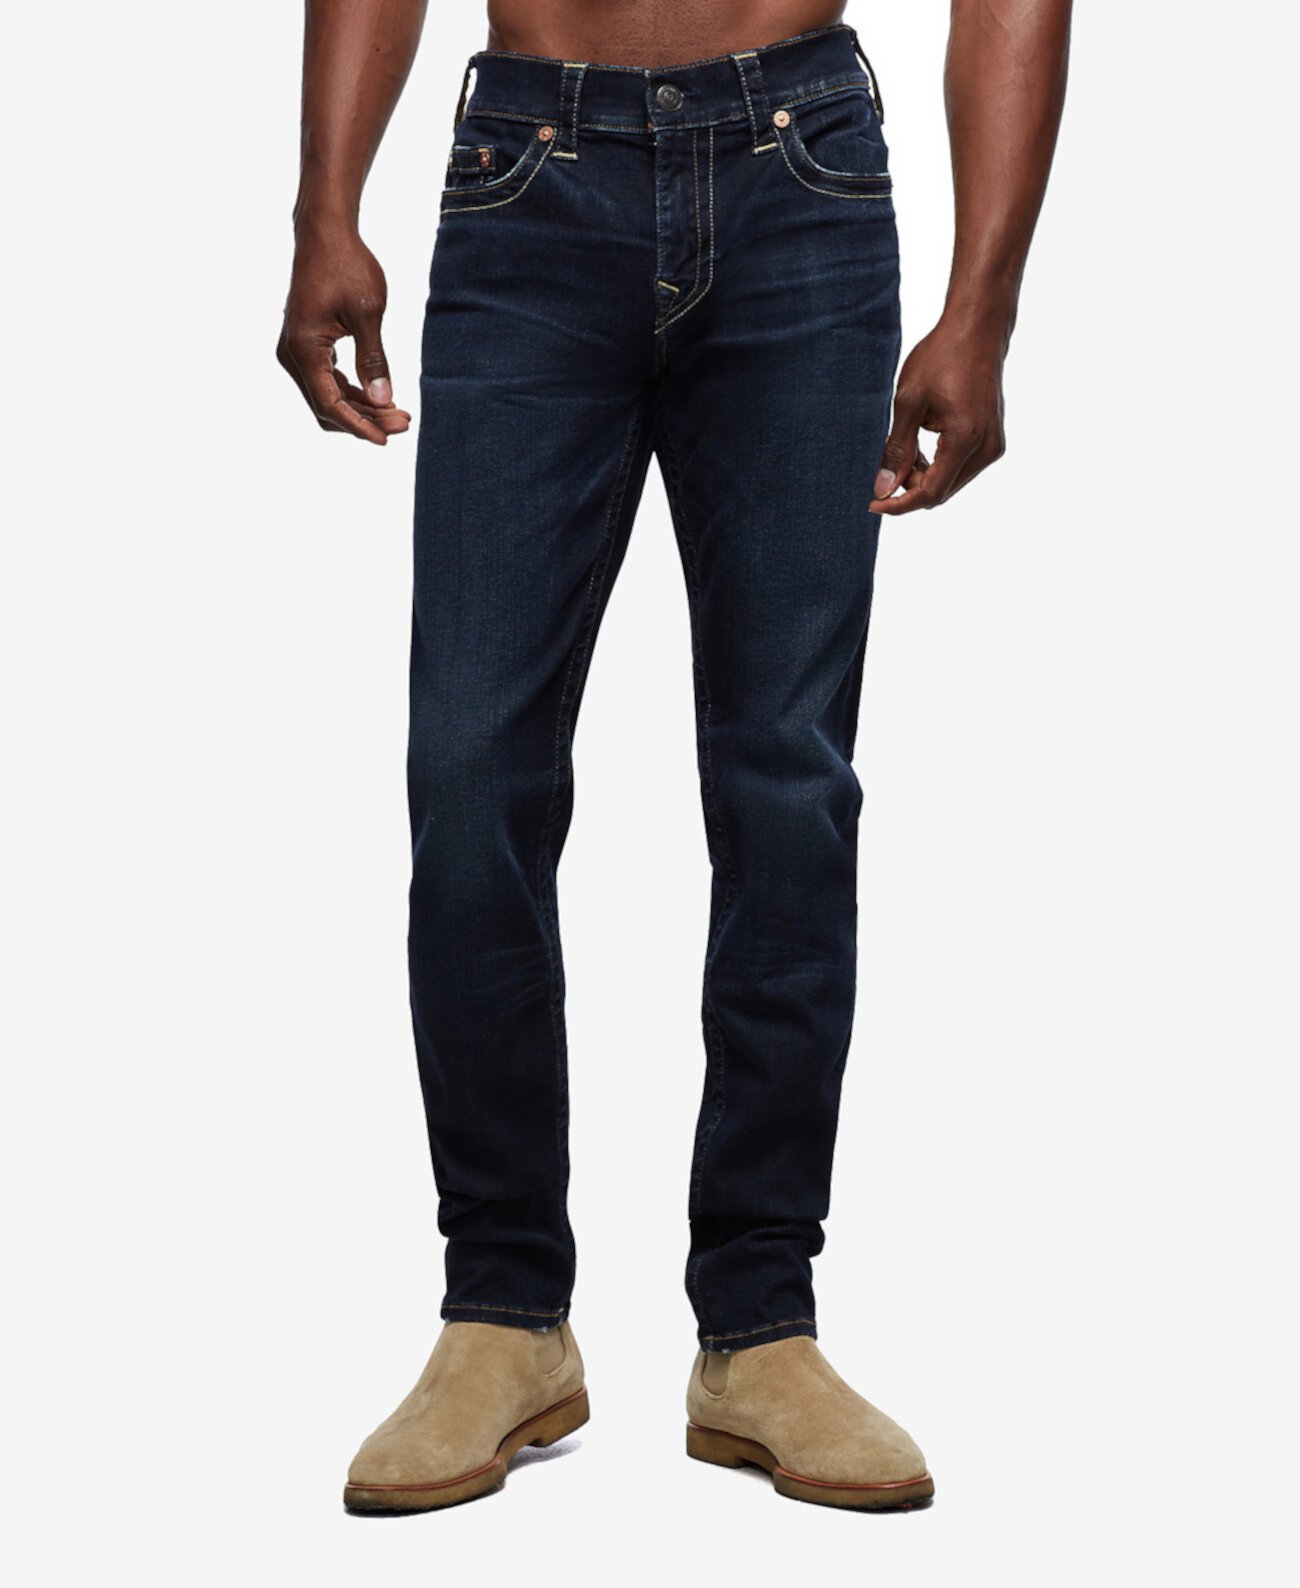 Мужские джинсы скинни Rocco с внутренним швом 32 дюйма True Religion